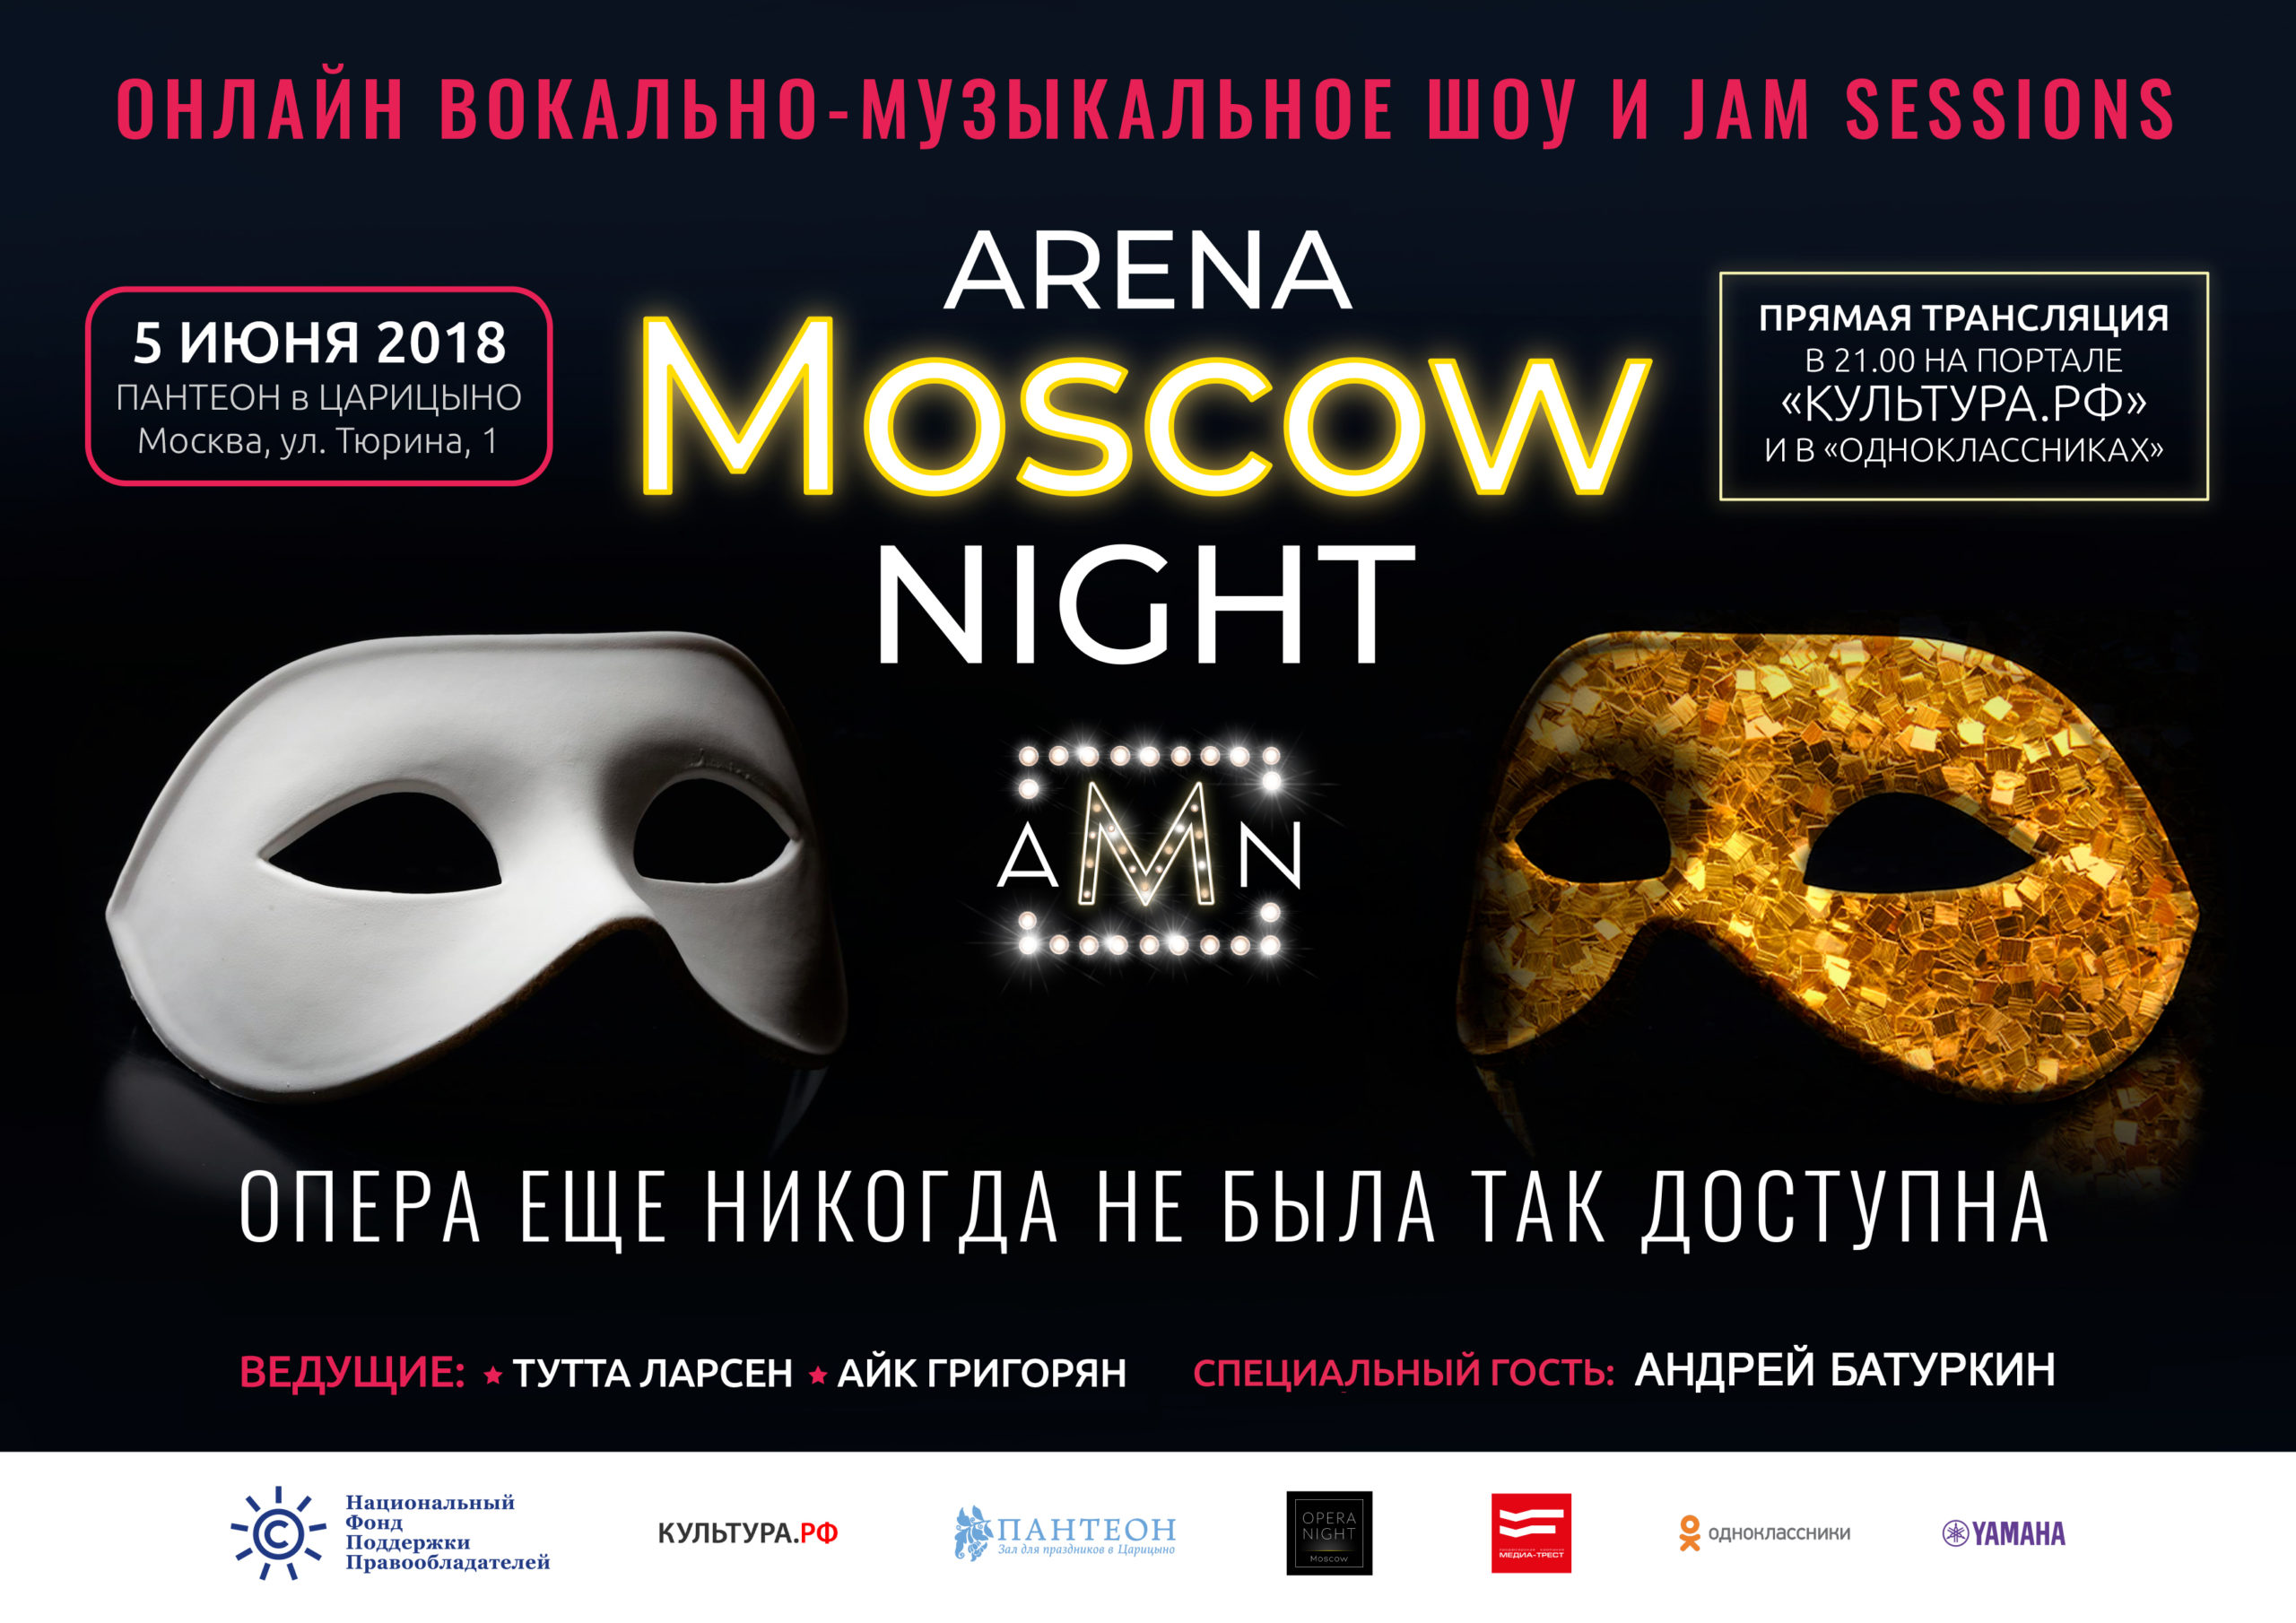 Опера, доступная всем: четвертый этап проекта НФПП Arena Moscow Night пройдет 5 июня